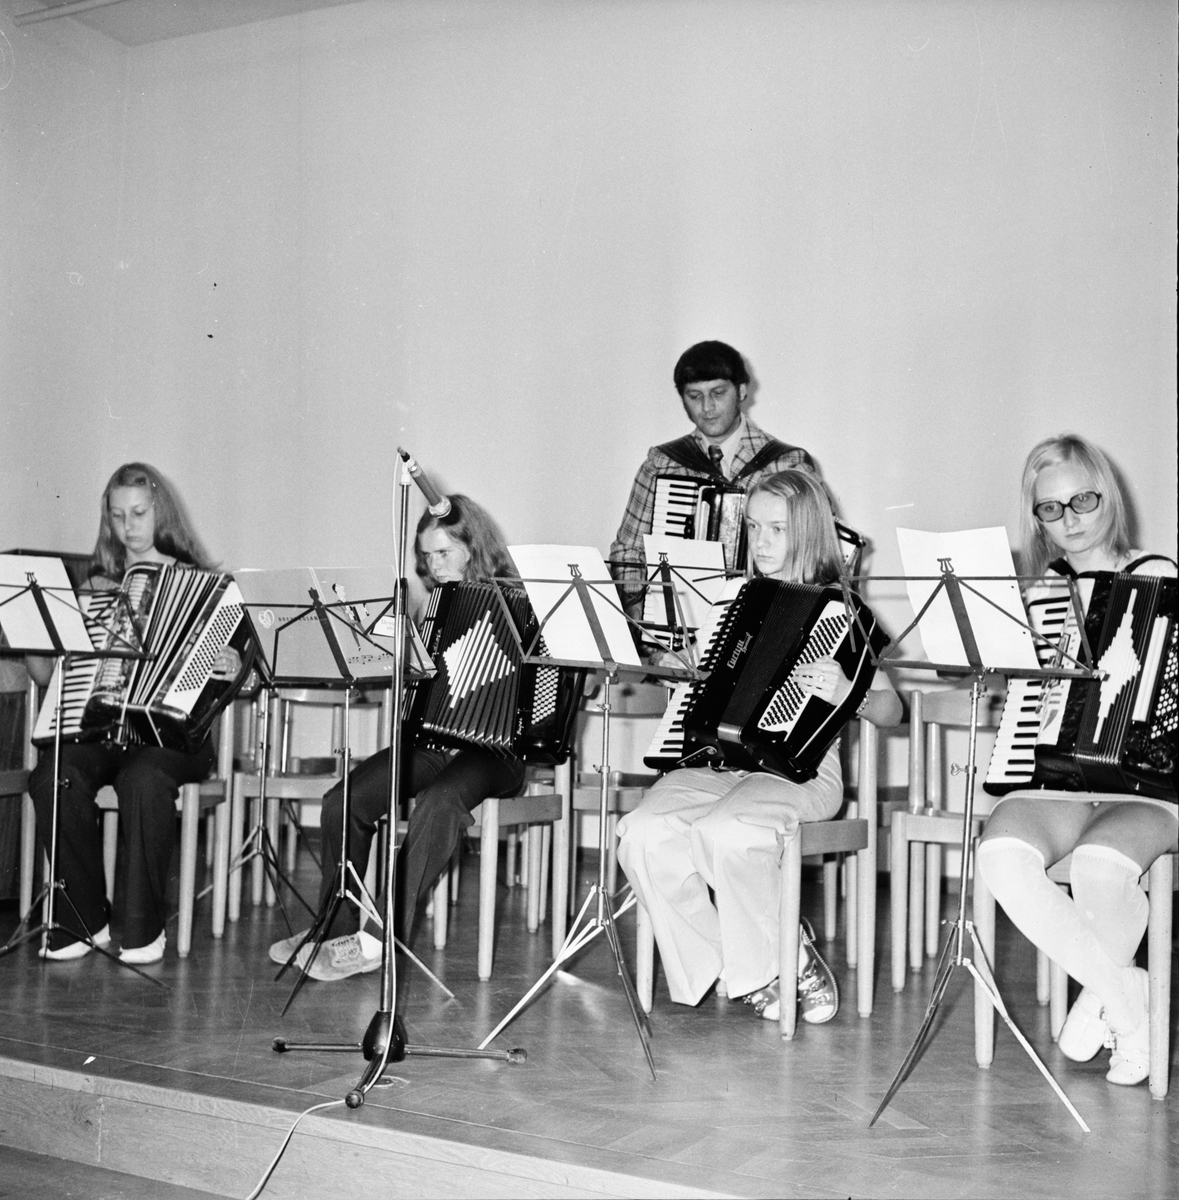 Musikavslutning i centralskolan.
Vårterminen 1972